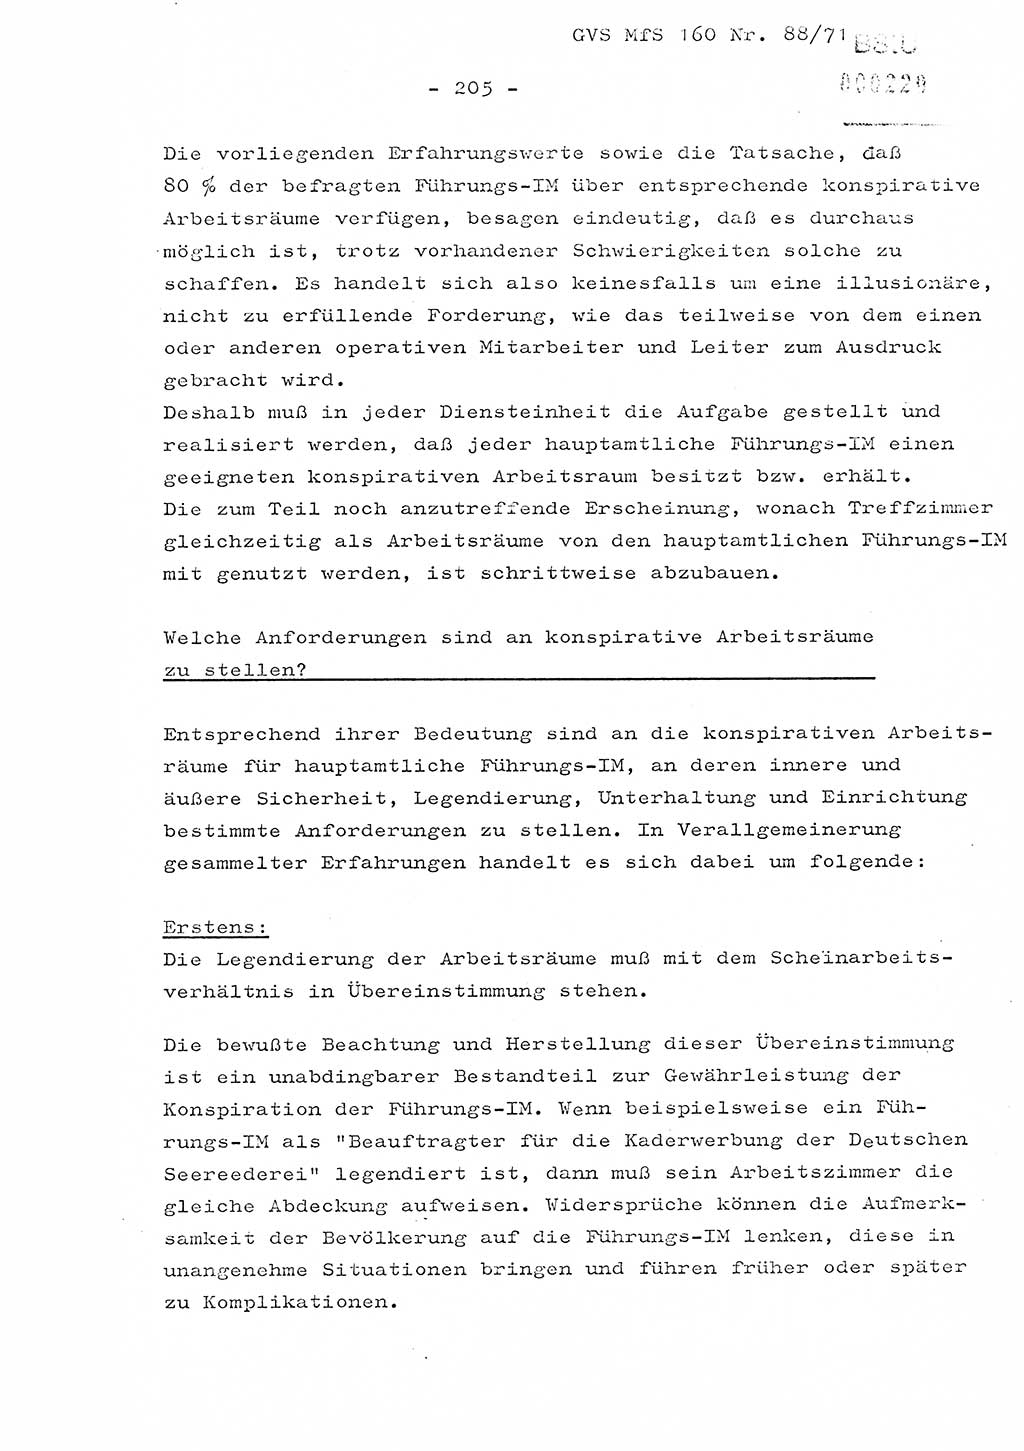 Dissertation Oberstleutnant Josef Schwarz (BV Schwerin), Major Fritz Amm (JHS), Hauptmann Peter Gräßler (JHS), Ministerium für Staatssicherheit (MfS) [Deutsche Demokratische Republik (DDR)], Juristische Hochschule (JHS), Geheime Verschlußsache (GVS) 160-88/71, Potsdam 1972, Seite 205 (Diss. MfS DDR JHS GVS 160-88/71 1972, S. 205)